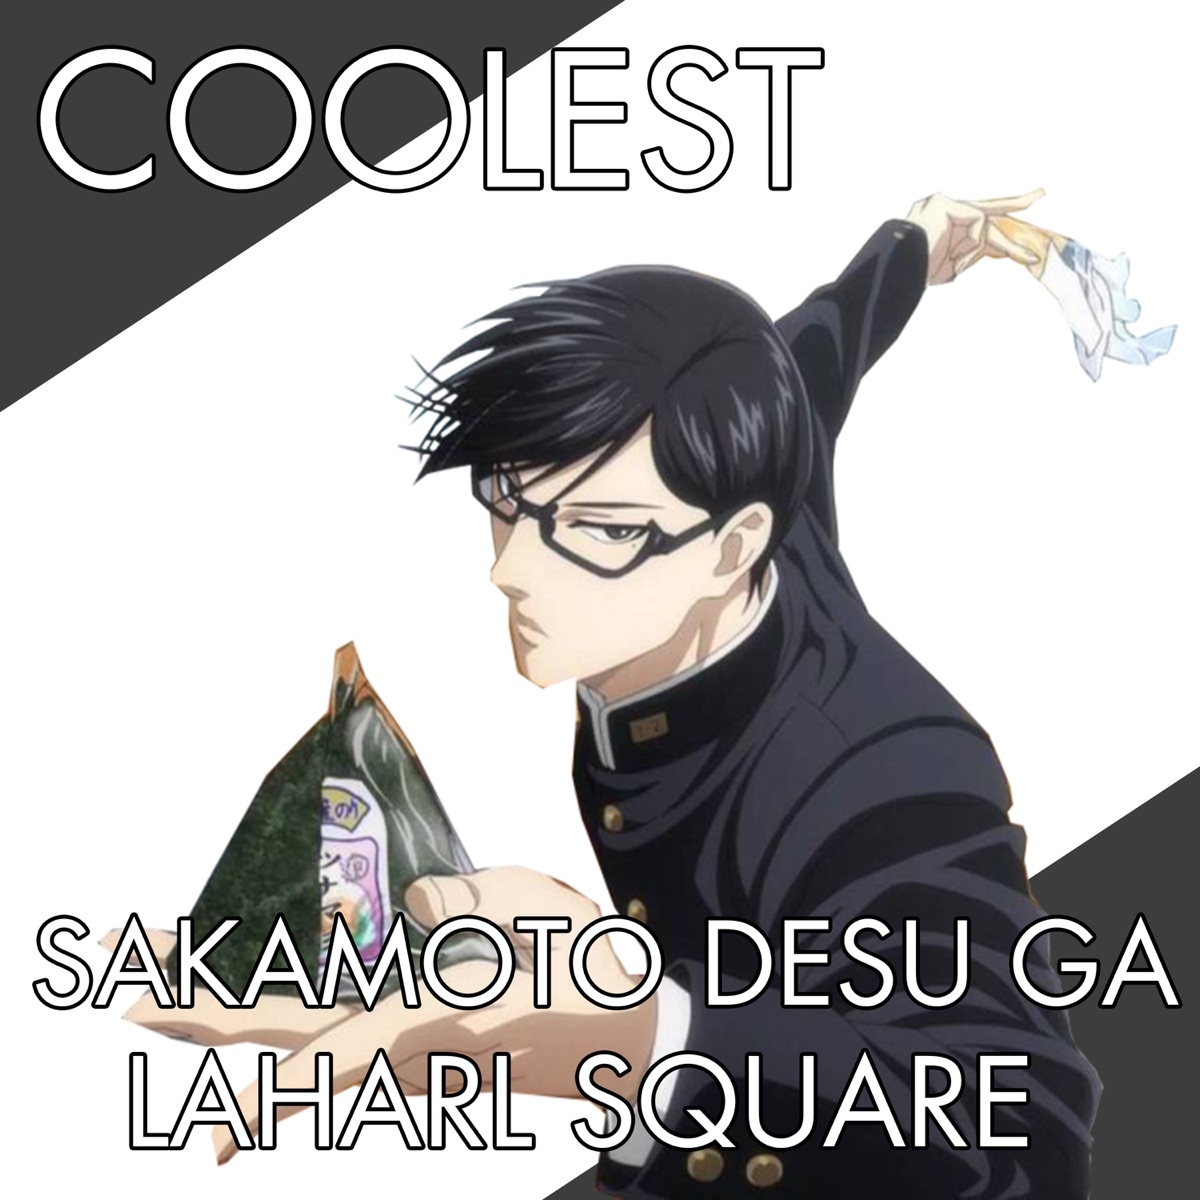 Coolest (From Sakamoto Desu Ga) - Single - Album by Laharl